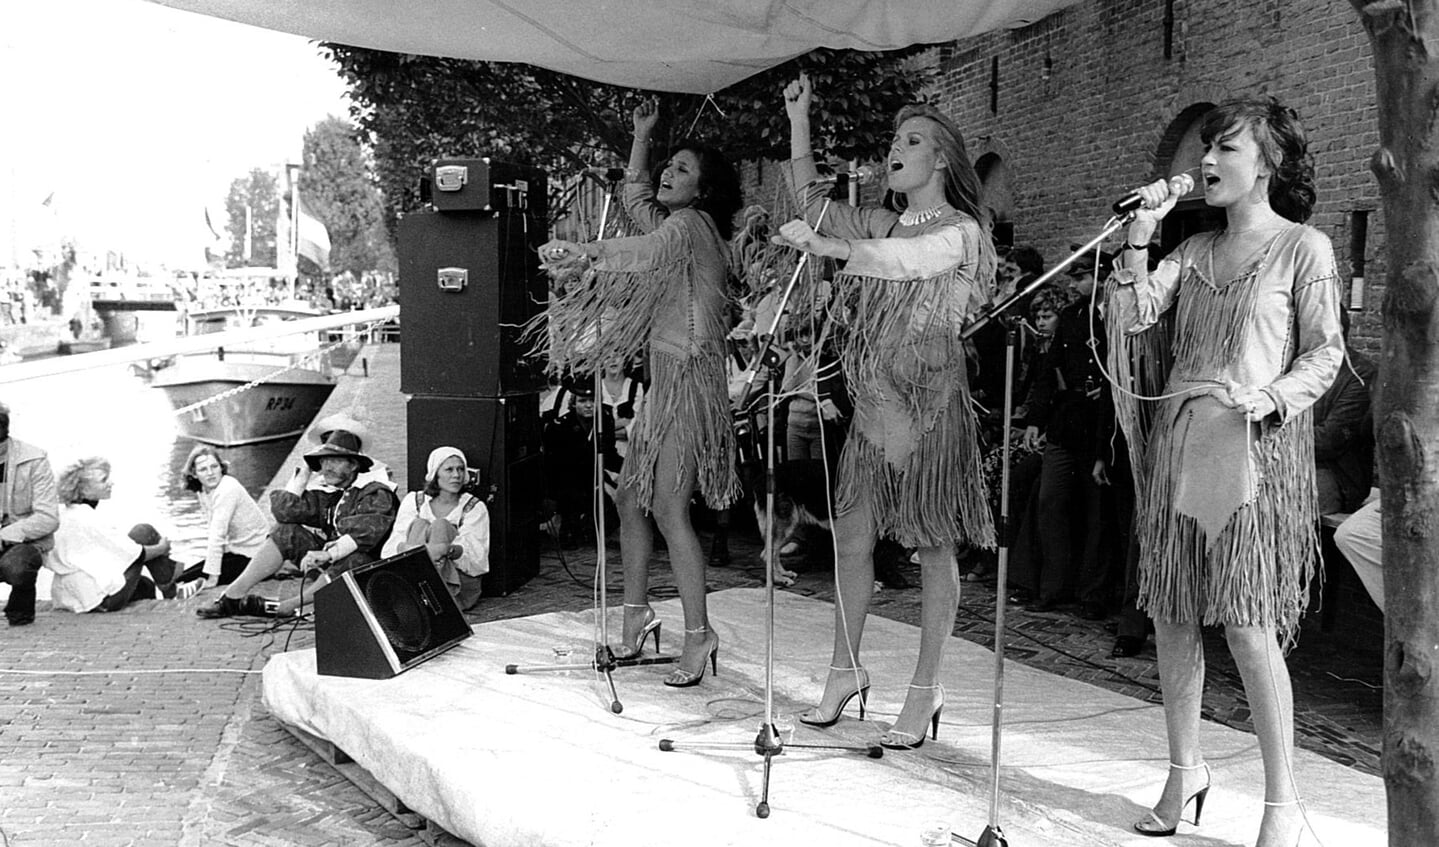 Ook tijdens het eerste feest: de populaire meidengroep Luv' (met links Patty Brard). Het optreden werd verstoord en de dames pakten al snel hun biezen. 